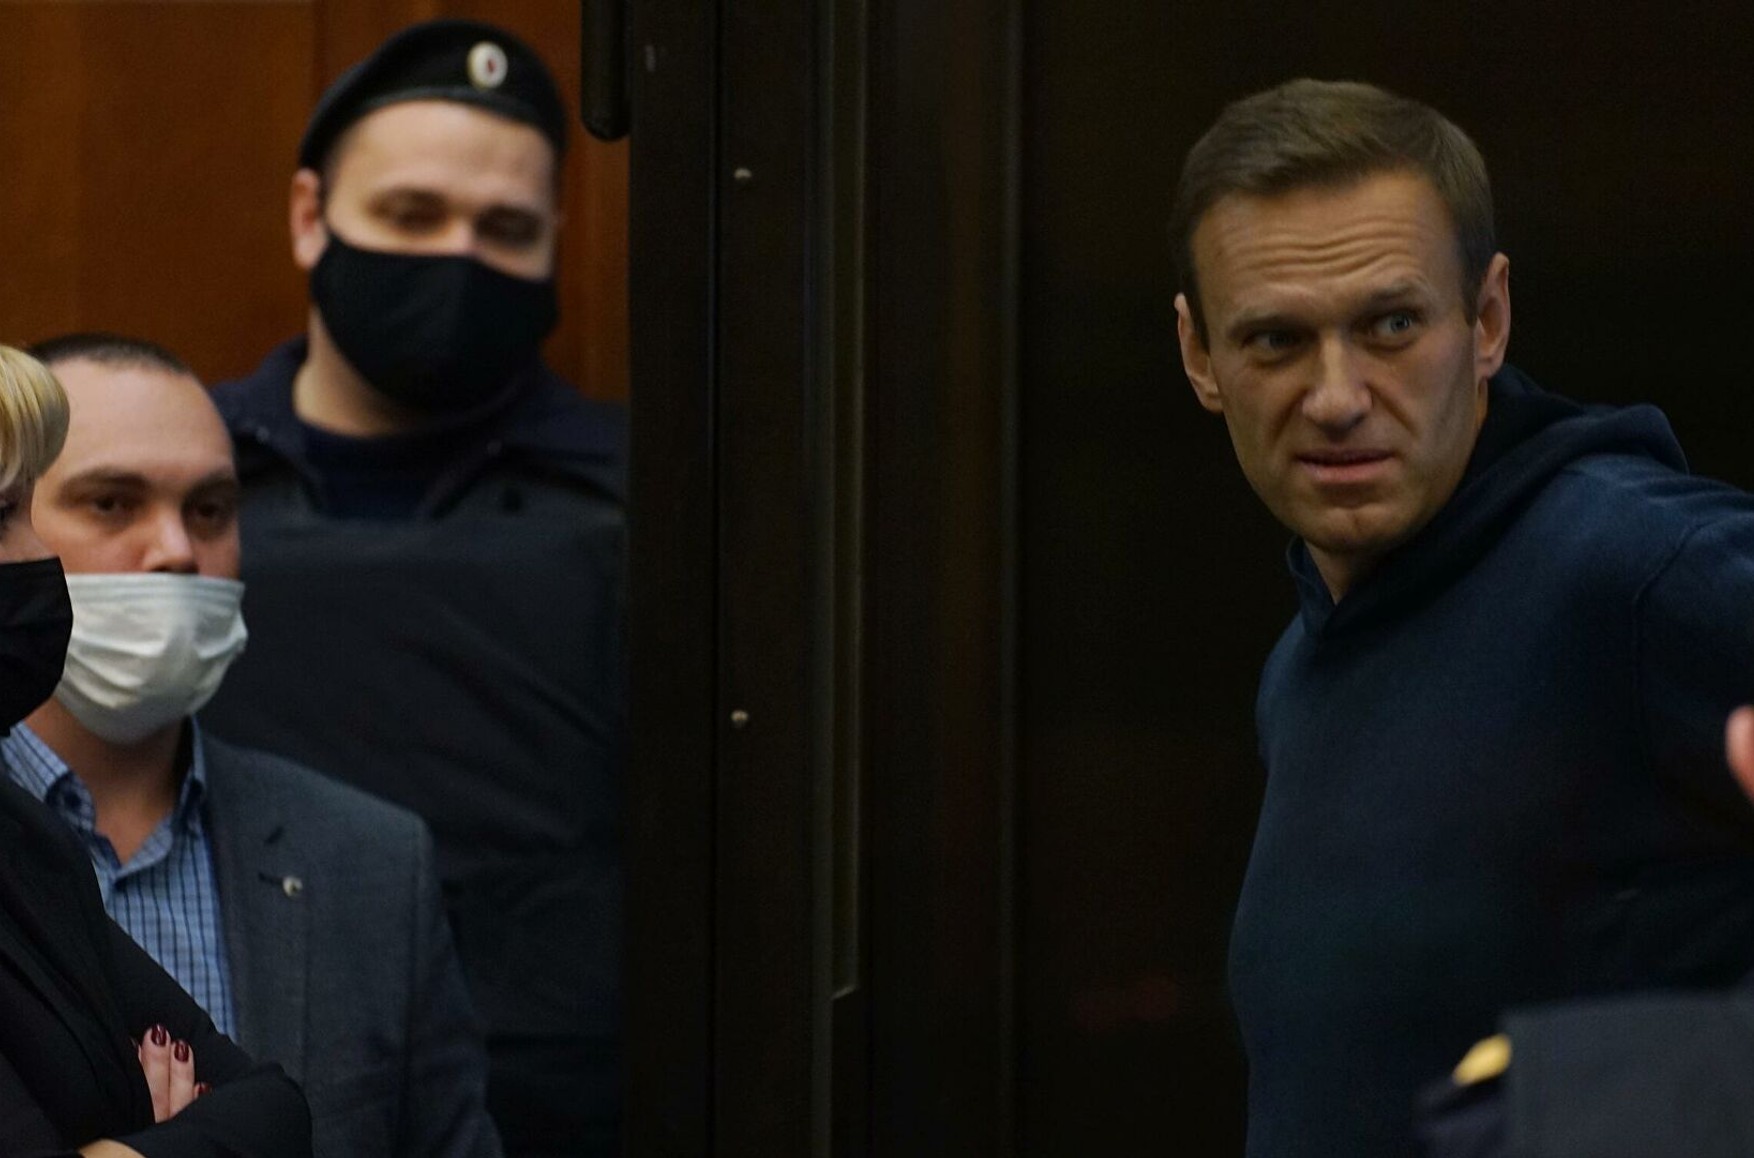 Олексій Навальний імовірно знаходиться в ІК-2 в Покрові - адвокат